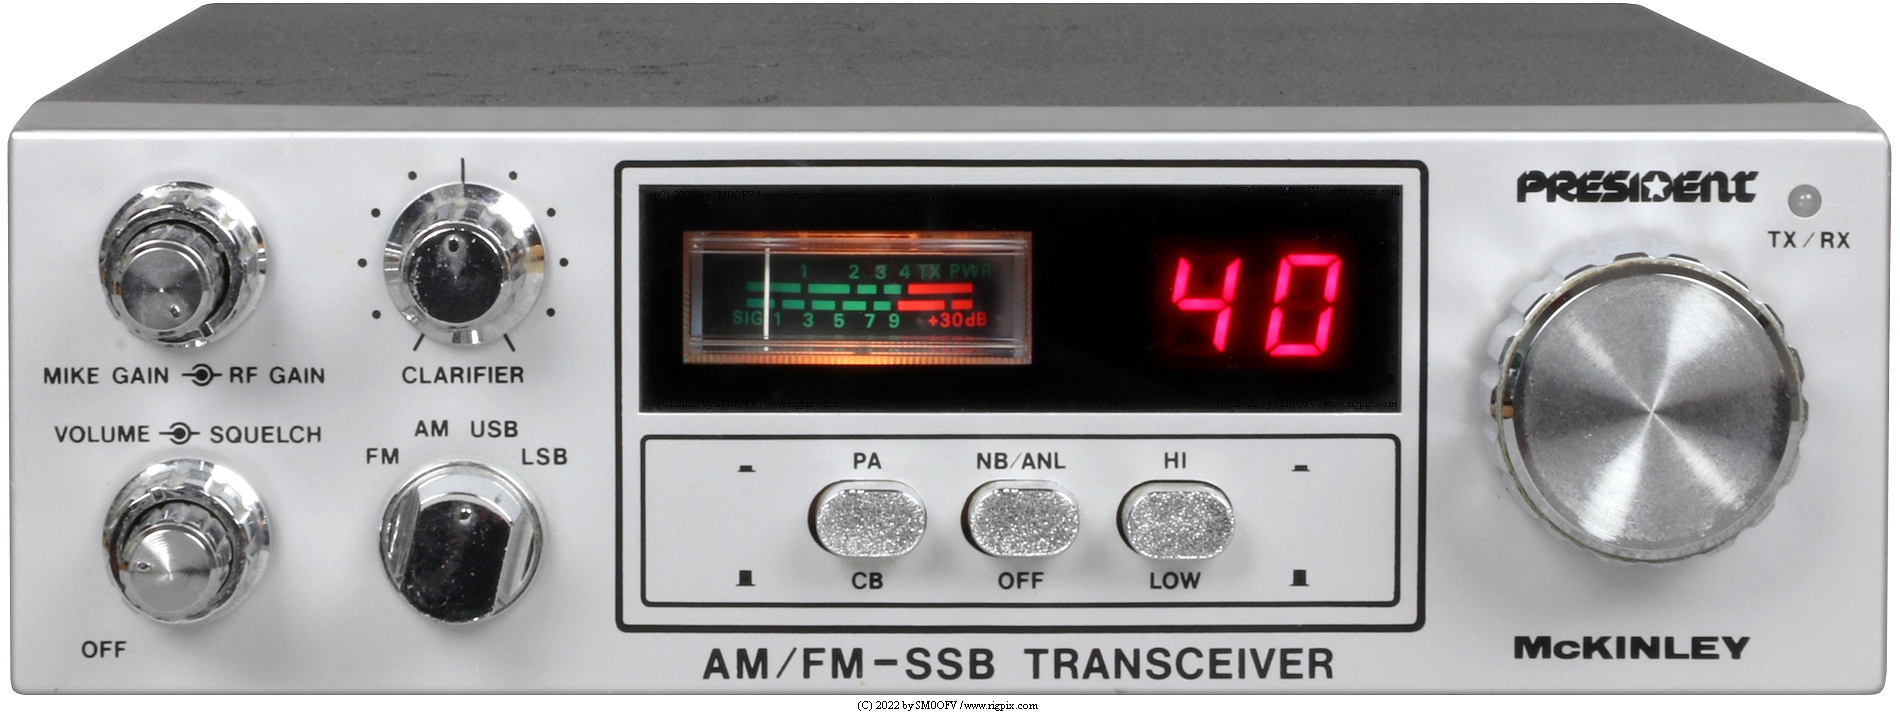 President McKinley: 40-channel AM/FM/SSB transceiver